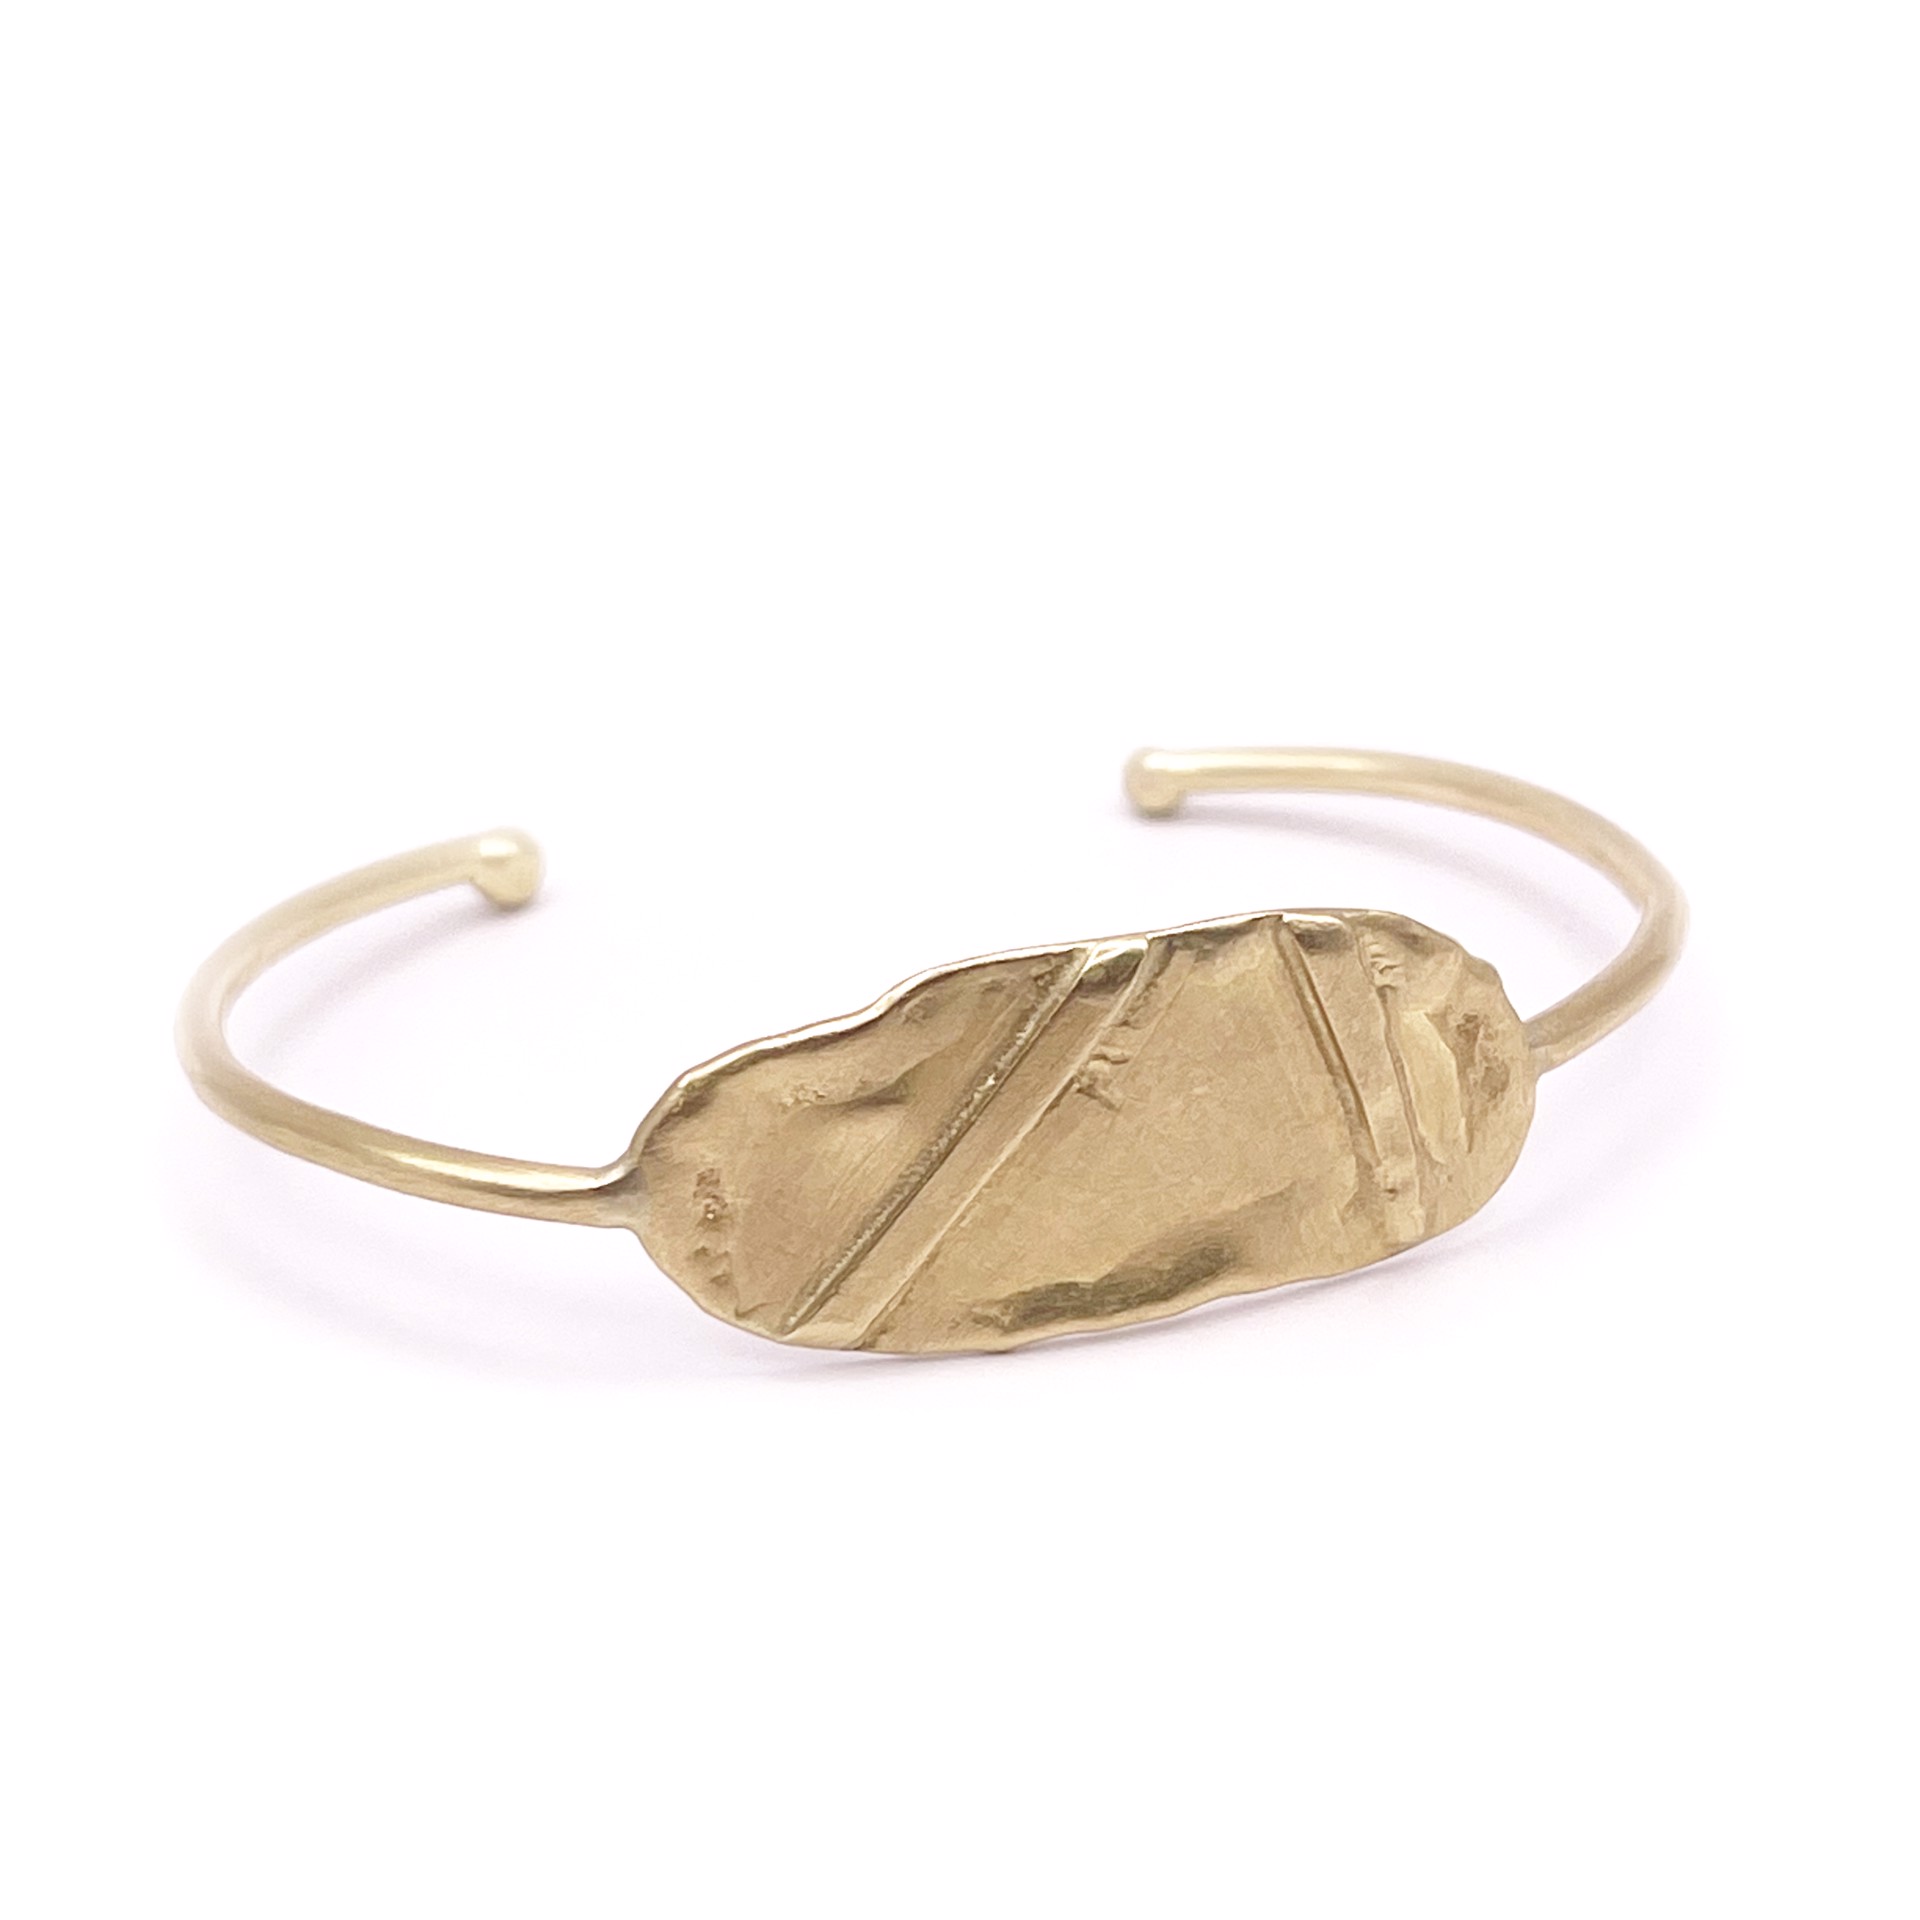 LLB3- Lifeline Cuff Bracelet Size 7.5 (18k Gold) by Leandra Hill